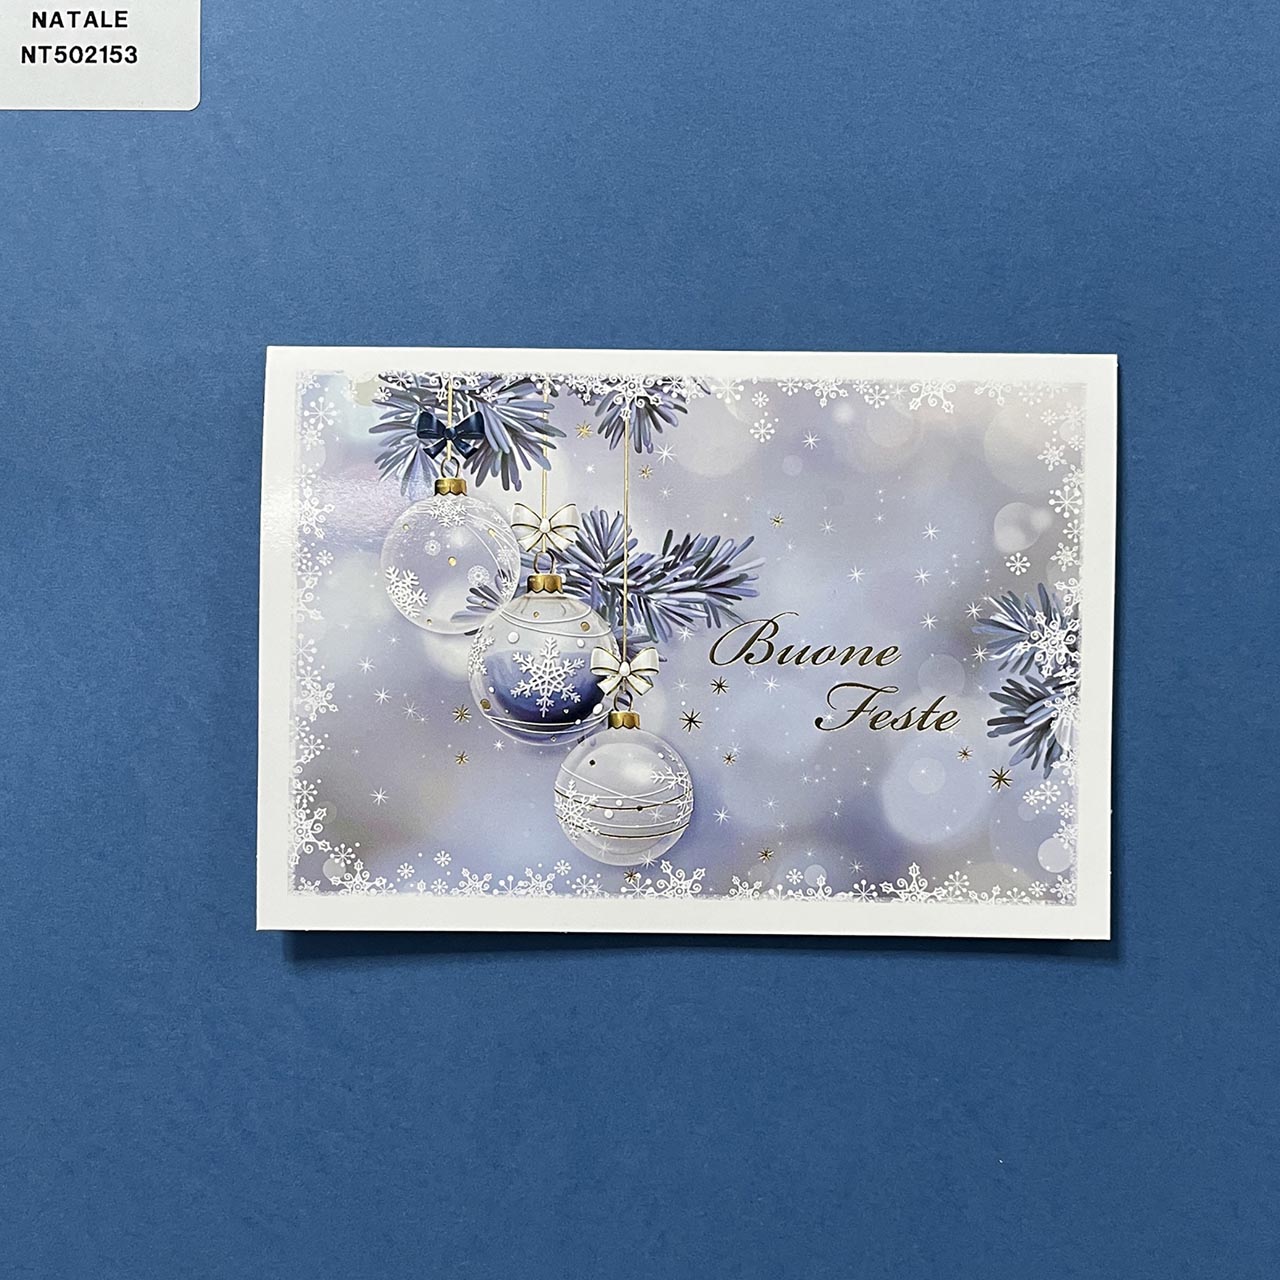 Biglietto di Natale personalizzabile orizzontale. Copertina lucida sui toni del blu con illustrazione moderna di tre palline appese e piccoli particolari a rilevo dorati.